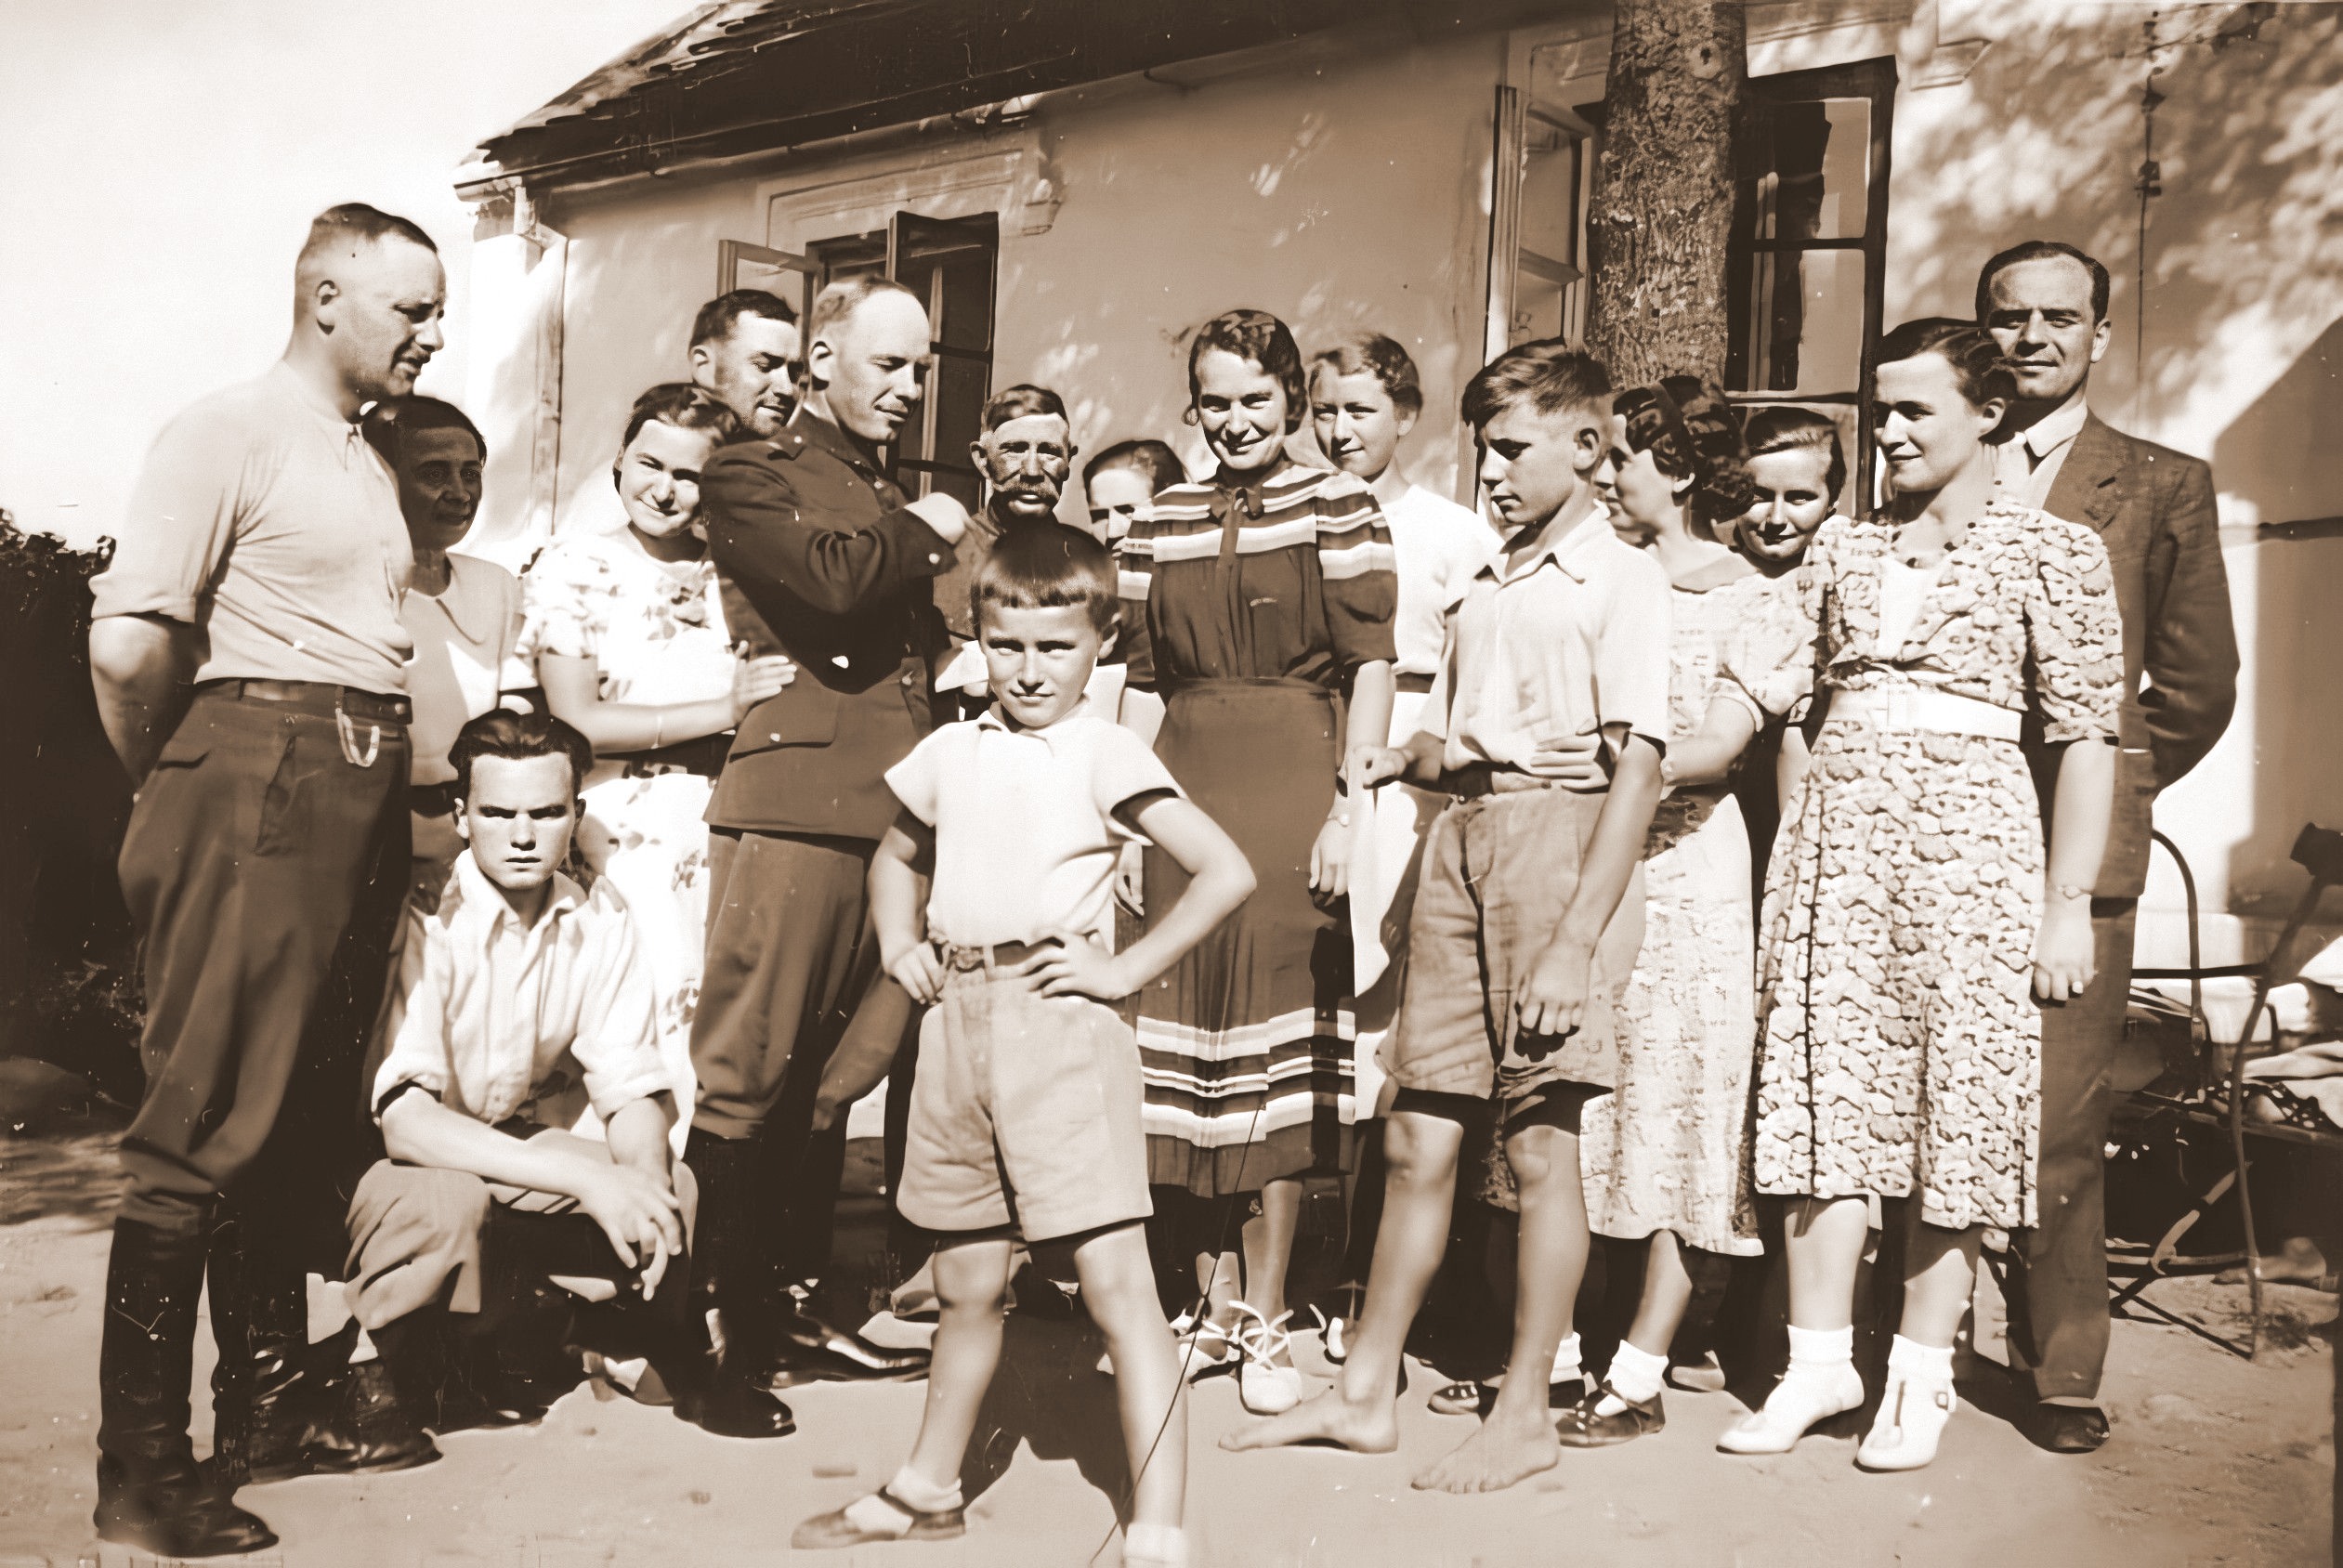 Przed domem w Ziemięcinie, 24.09.1939 rok, (Emma po środku).